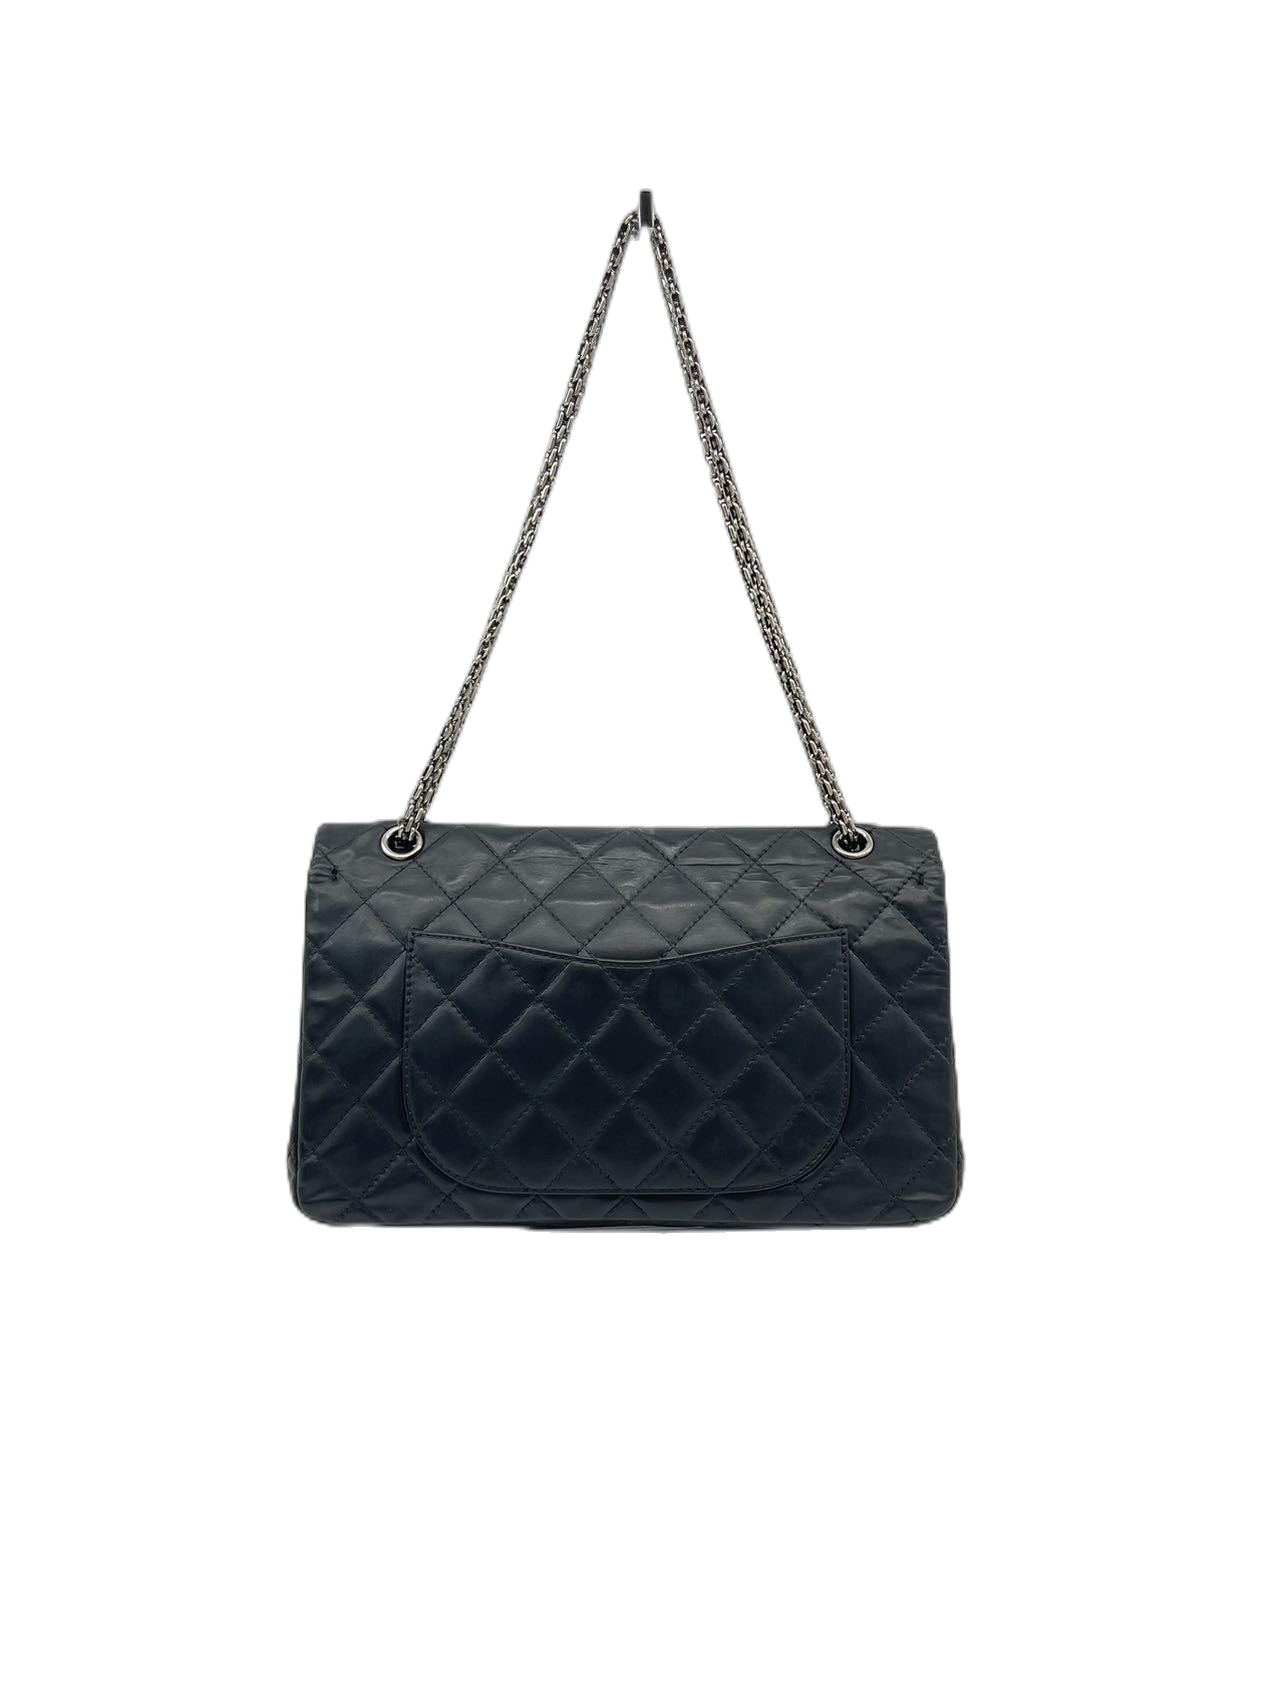 Preloved Chanel Black Leather Large Double Flap 2.55 Shoulder Bag